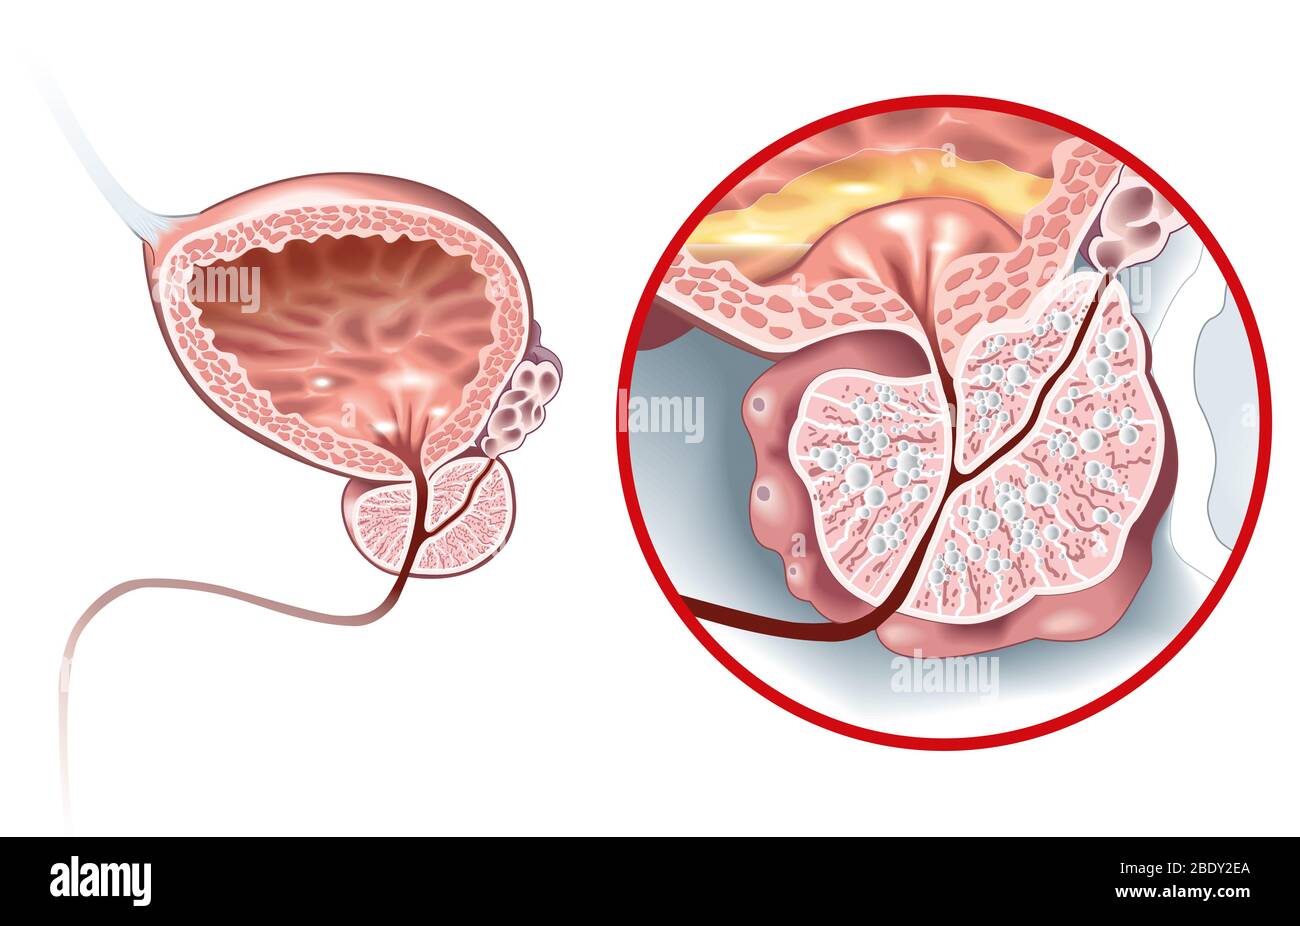 Abbildung zeigt gesunde Prostata und gutartige Prostatahyperplasie (BPH), vergrößerte Prostata mit Blase, Harnröhre und Samenbläschen Stockfoto